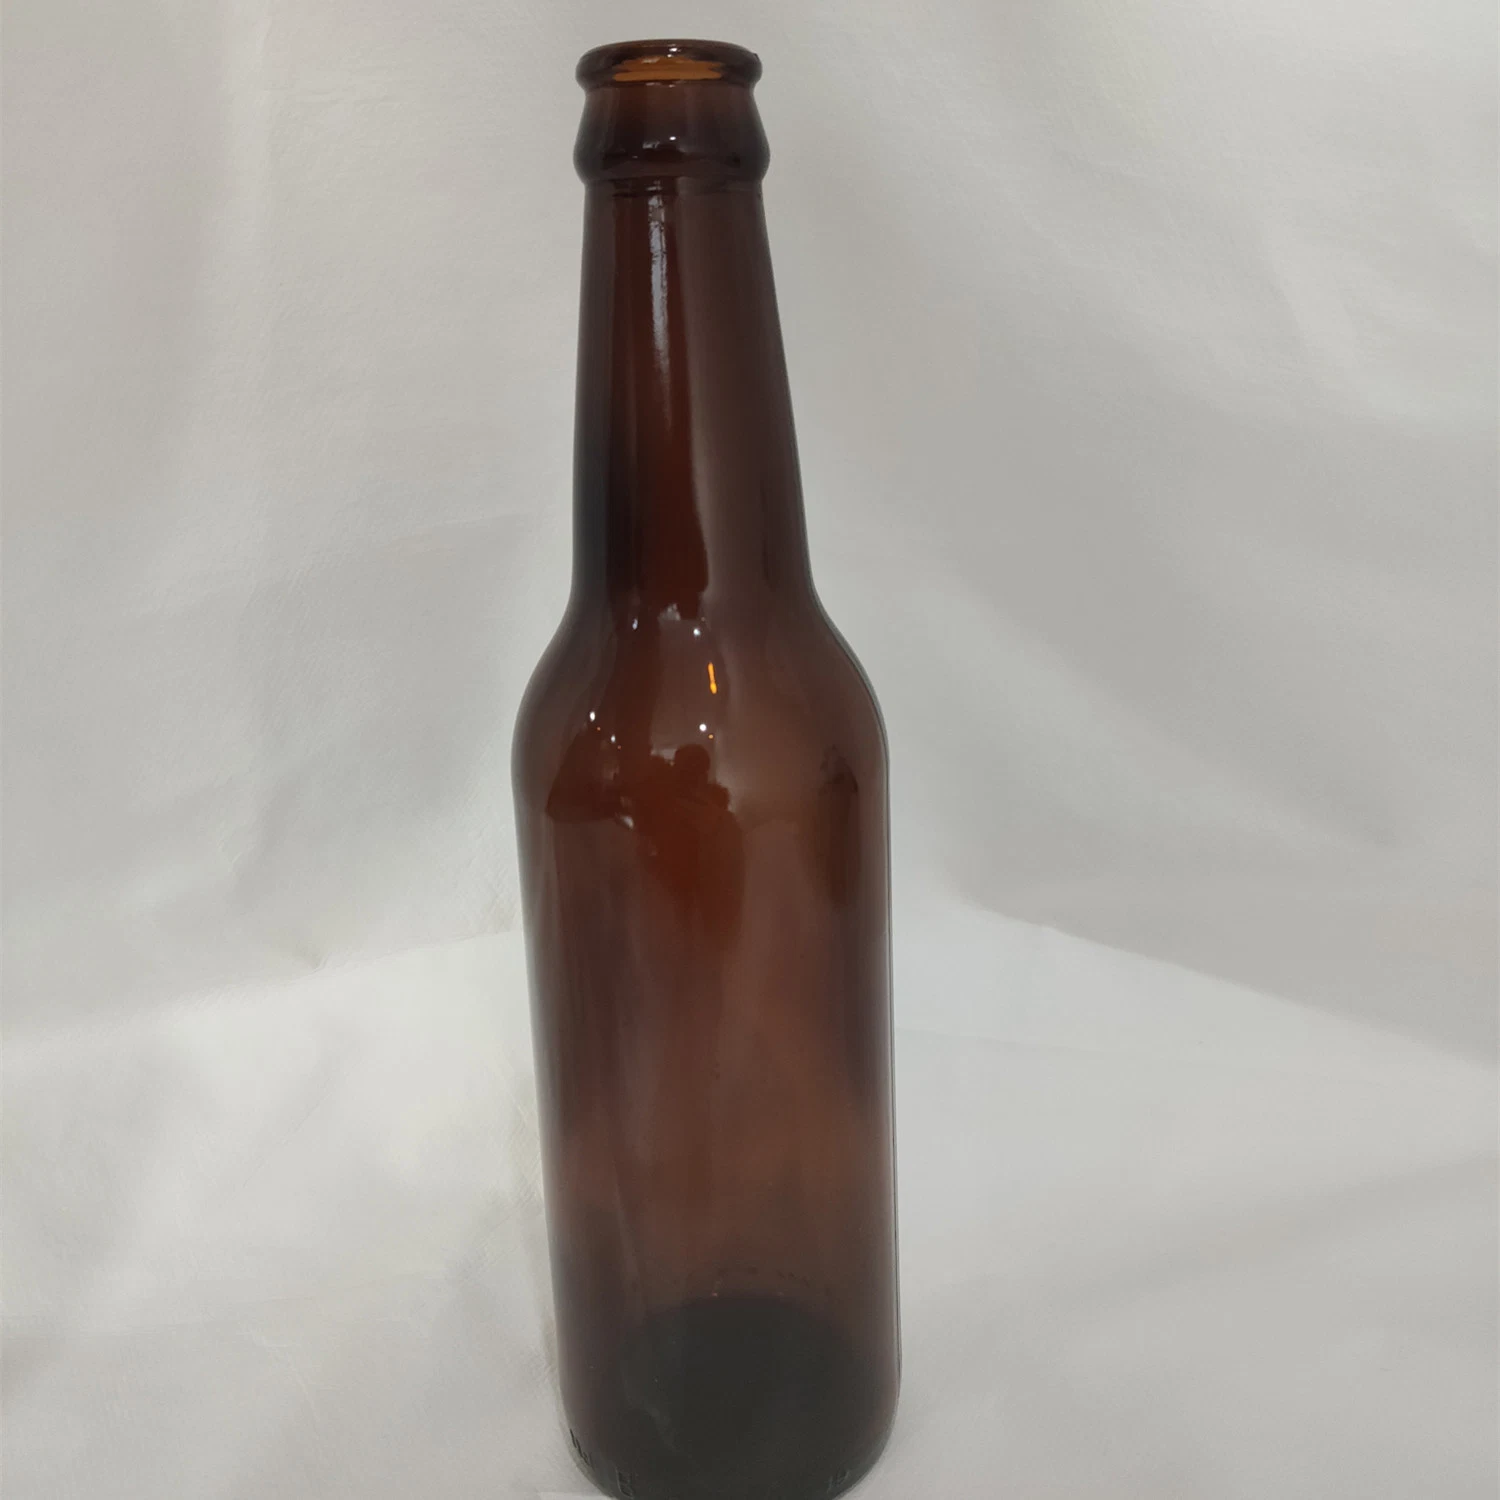 Buena calidad 330ml Brown transparente botella de vidrio botella de vino cerveza Botella de cerveza de vidrio